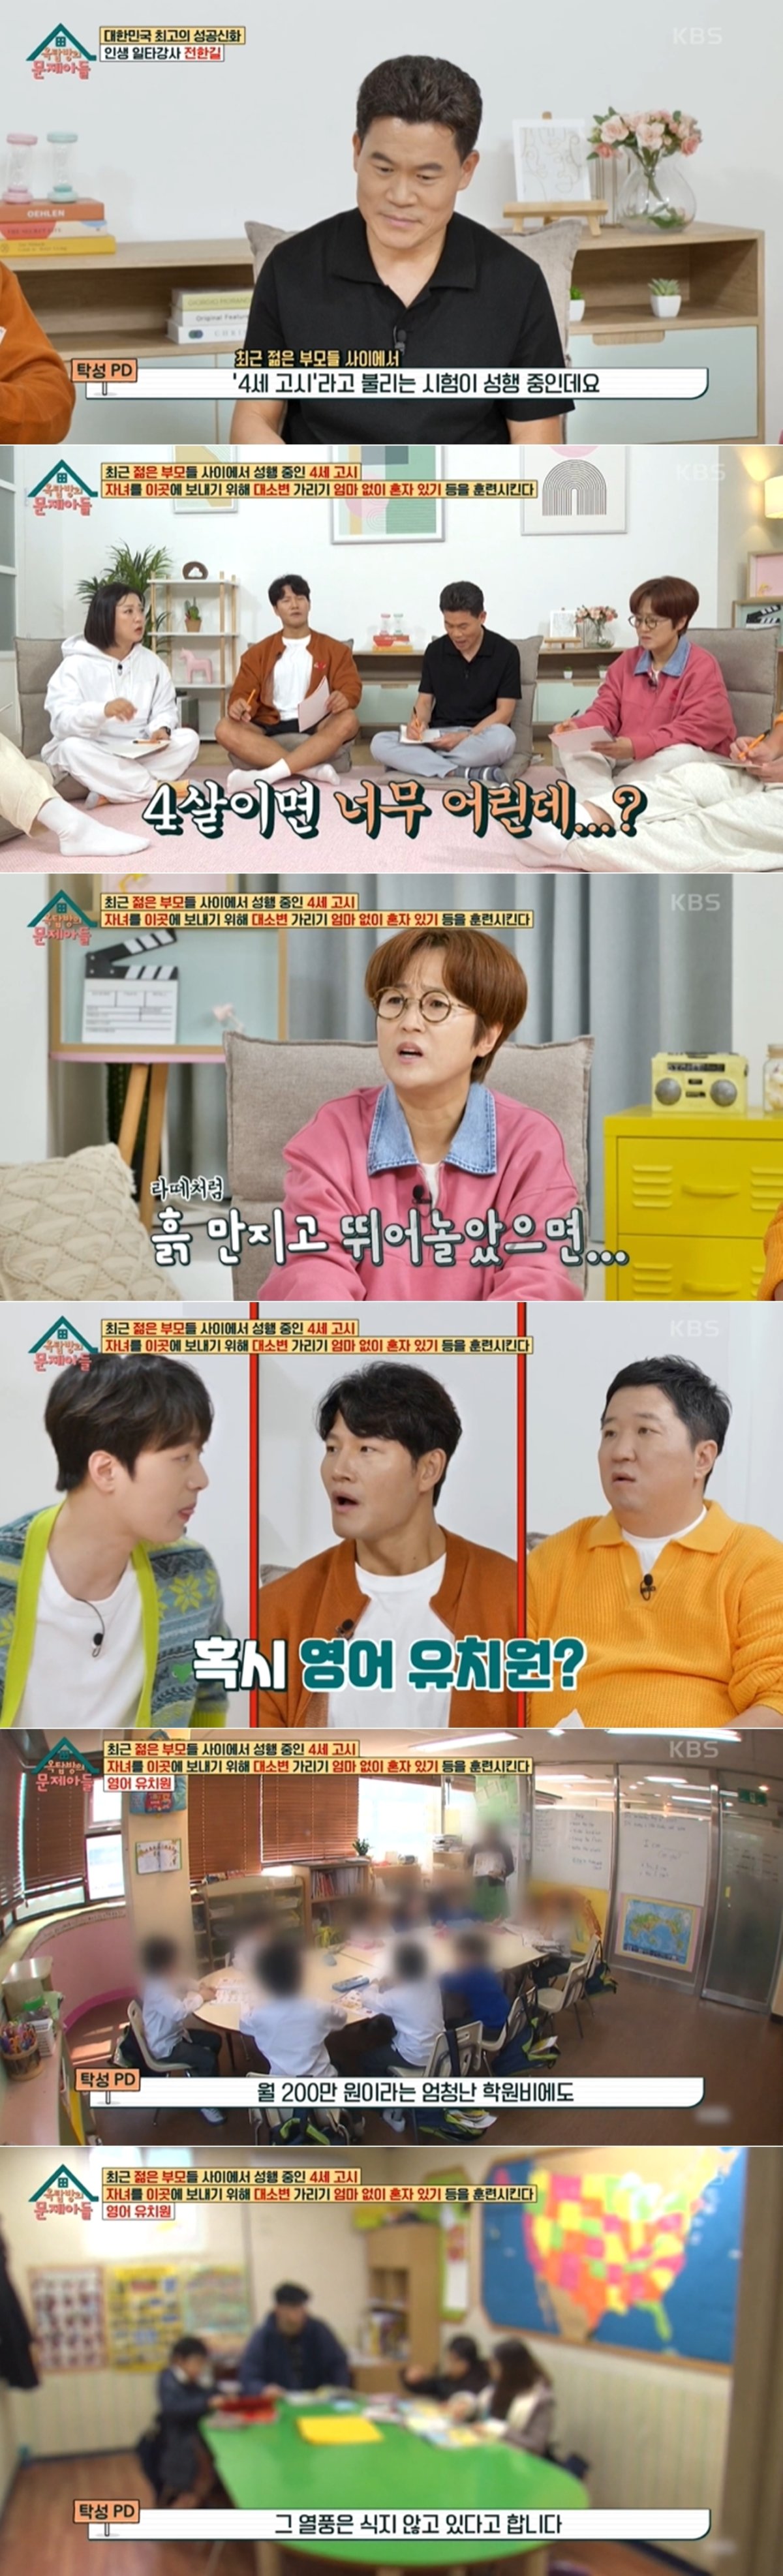 KBS 2TV 예능프로그램 '옥탑방의 문제아들' 방송 화면 갈무리